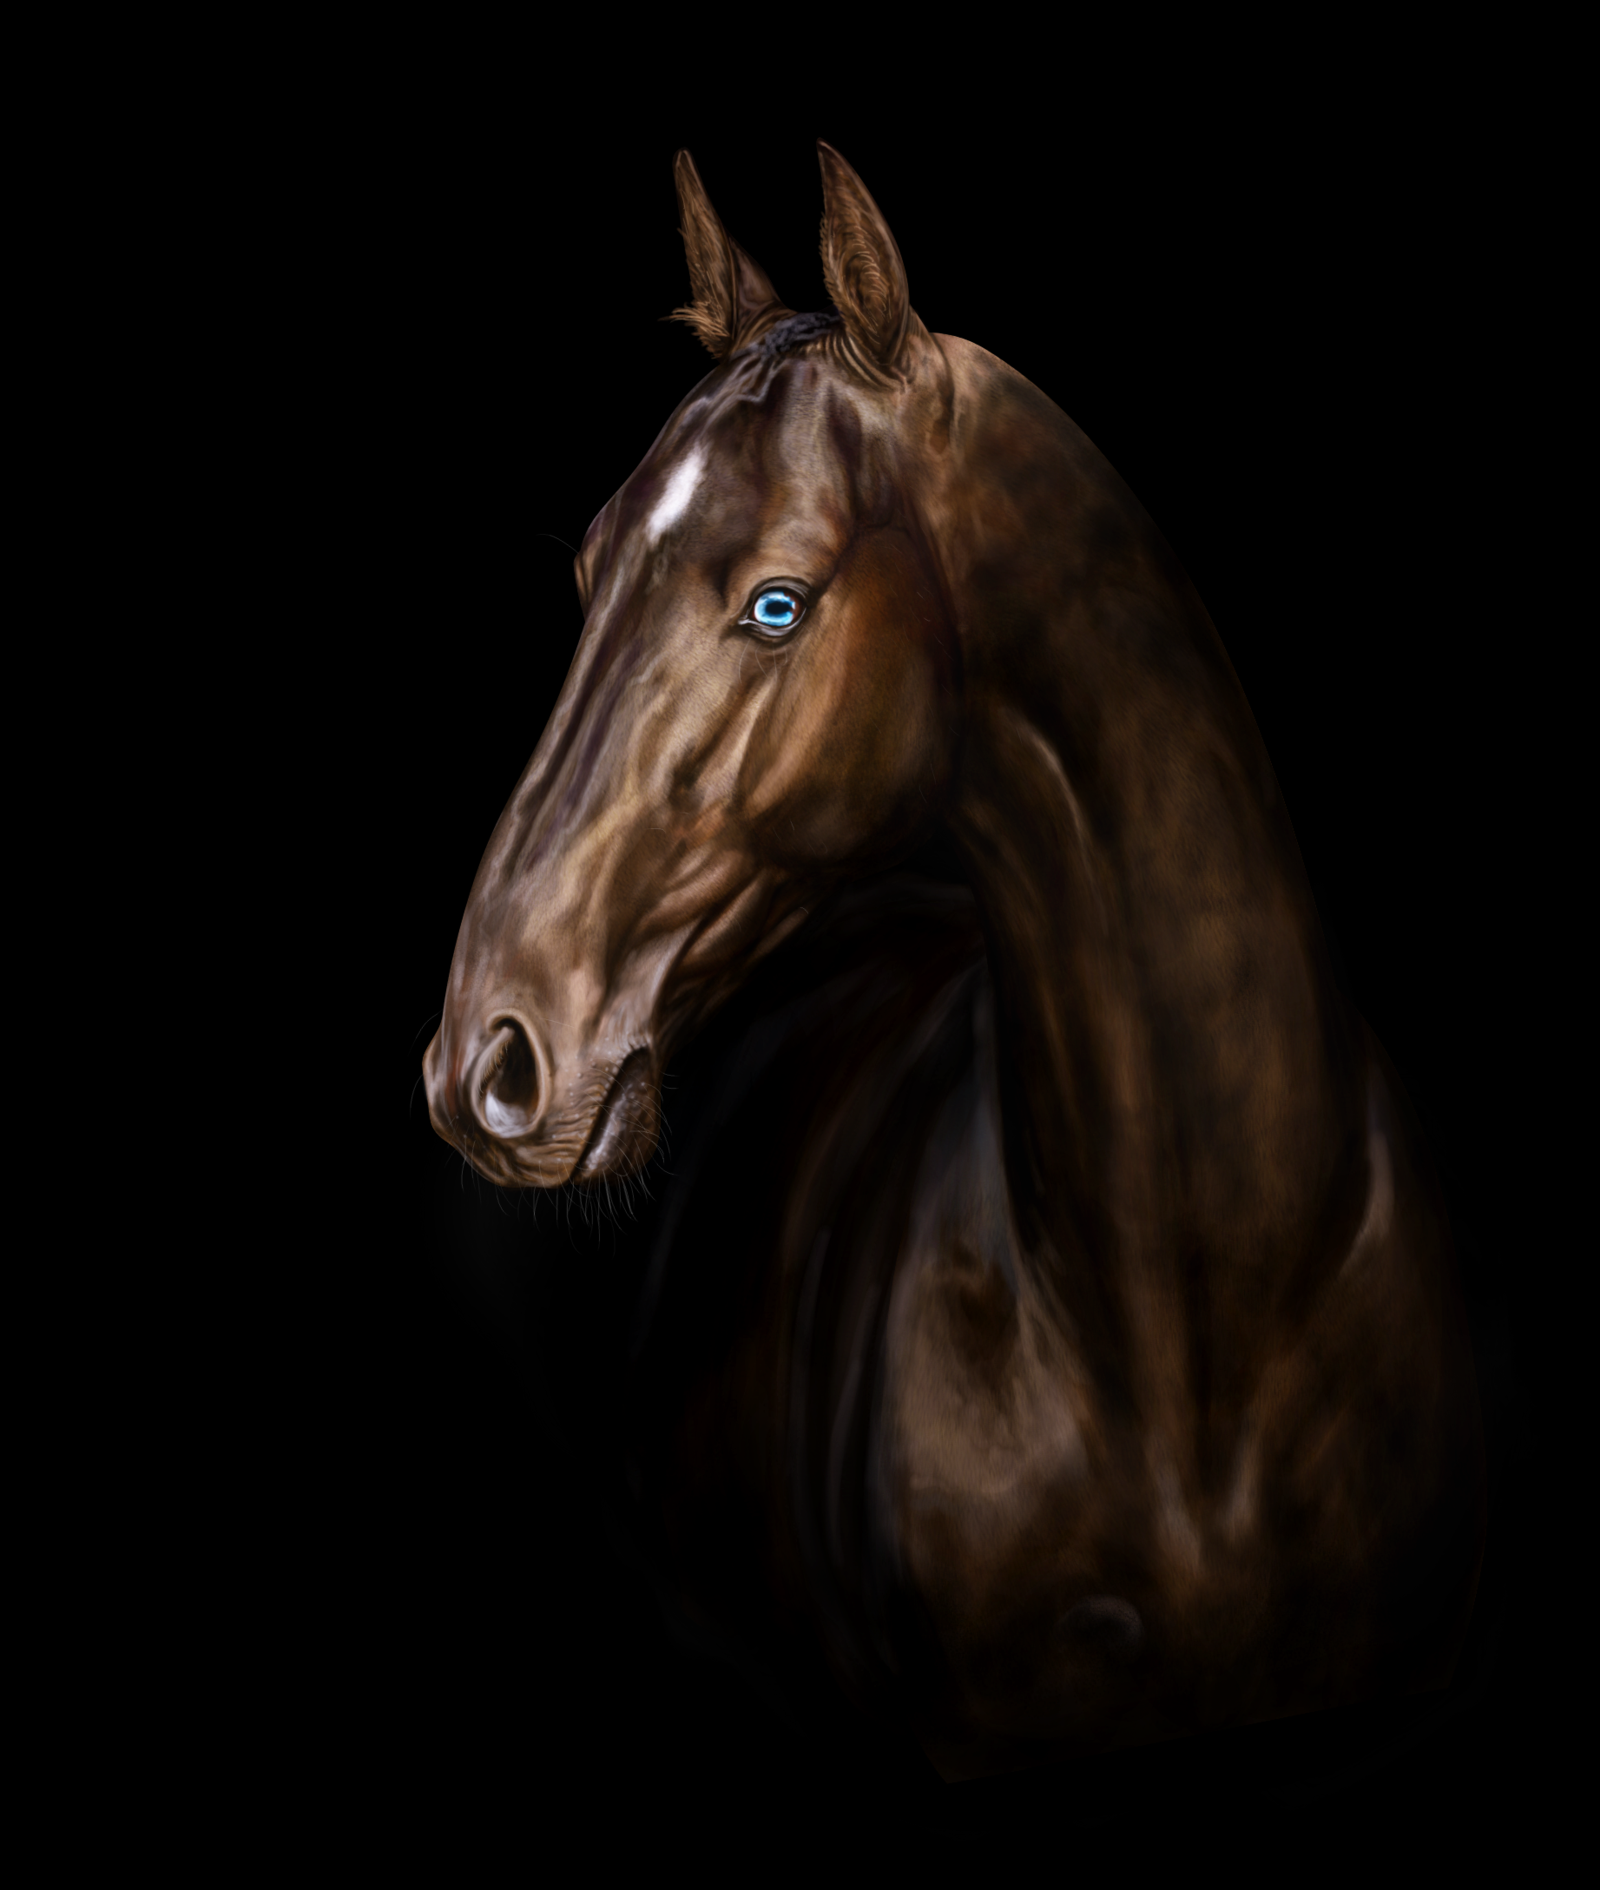 Лошадь на черном фоне. Тохтамыш ахалтекинец. Пегий ахалтекинец. Вороной ахалтекинец с голубыми глазами. Ахалтекинская лошадь анфас.